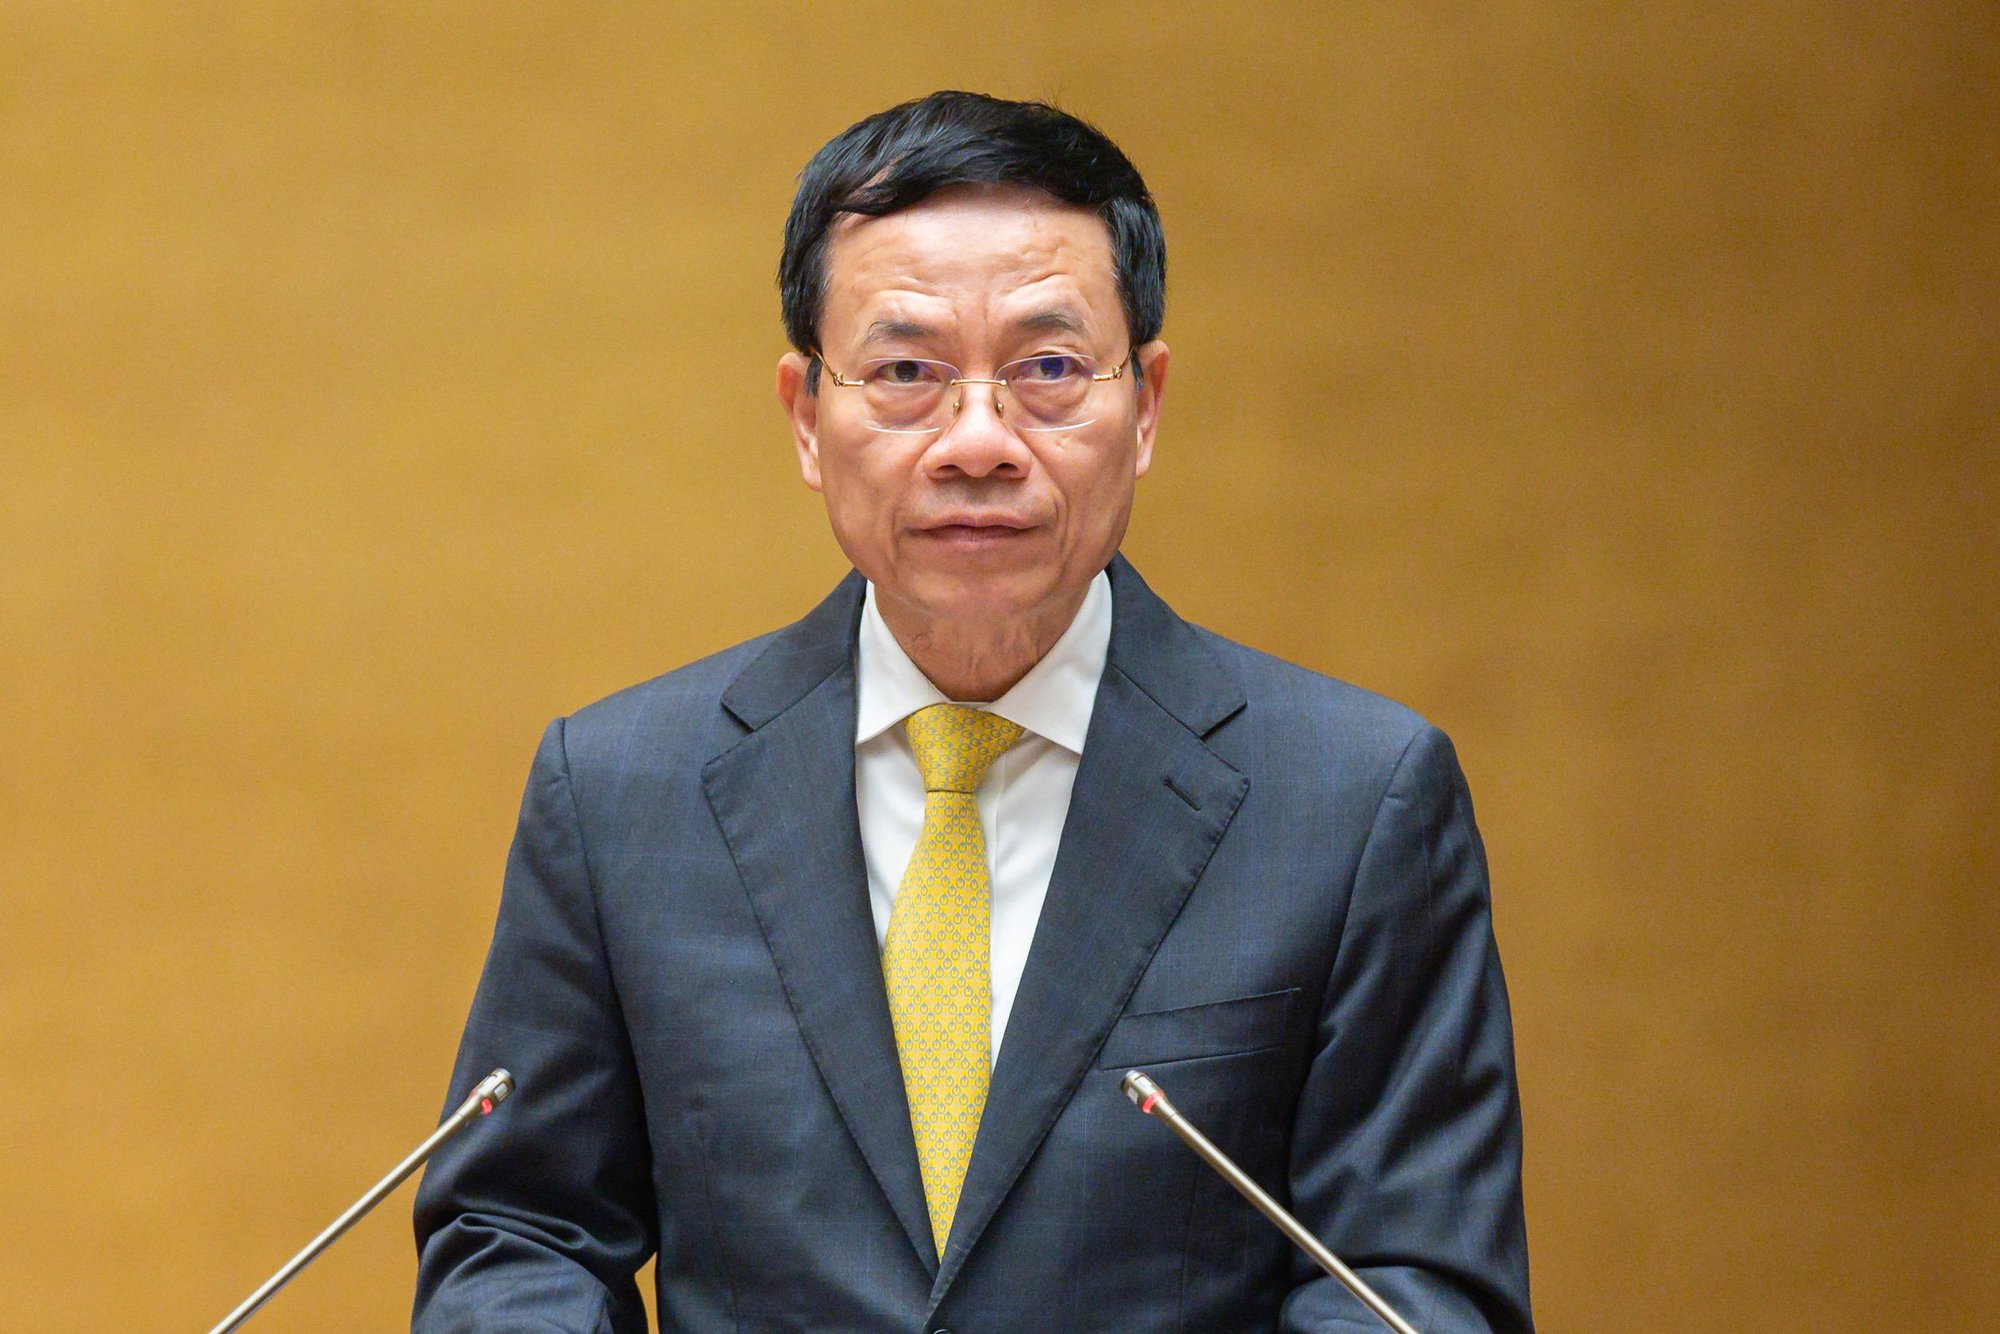 Thủ tướng Chính phủ Phạm Minh Chính và 4 tư lệnh ngành sẽ đăng đàn trả lời chất vấn - Ảnh 2.